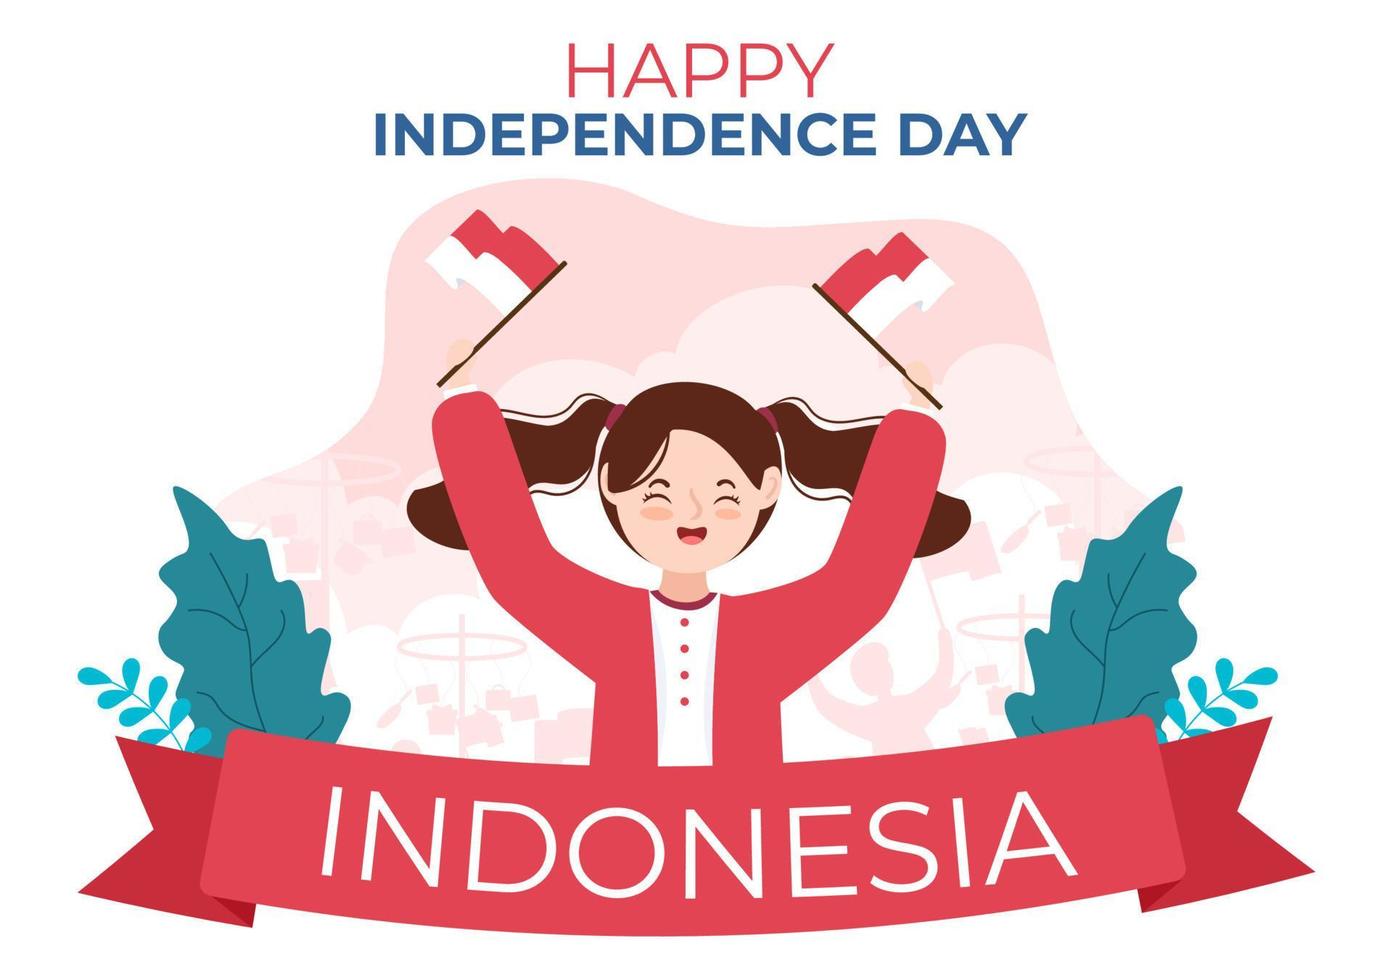 día de la independencia de indonesia el 17 de agosto con juegos tradicionales, bandera roja blanca y personaje de personas en una linda ilustración de fondo de caricatura plana vector